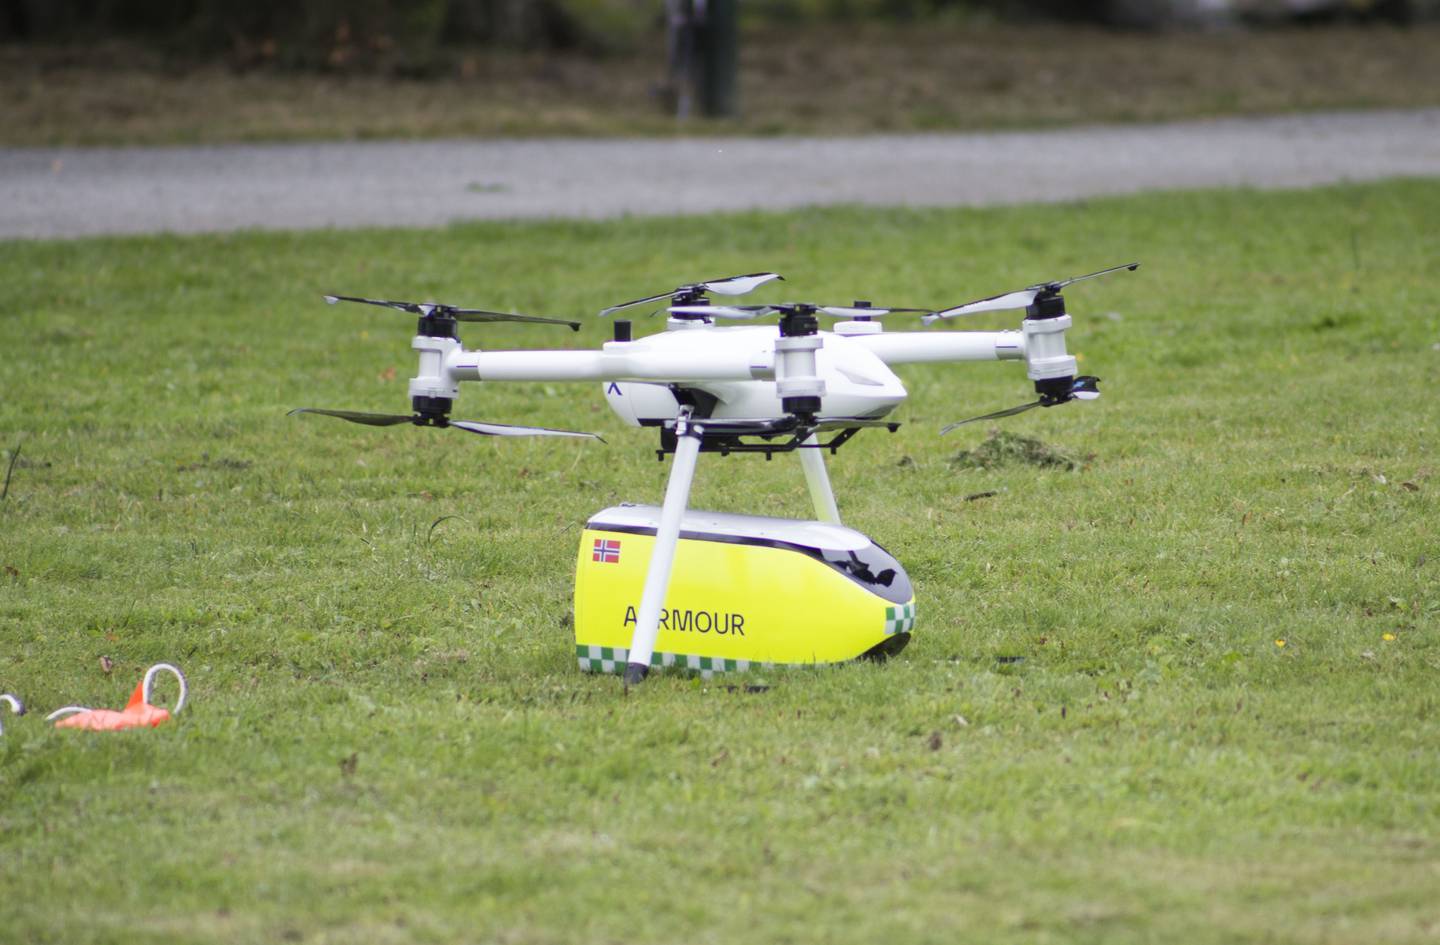 Denne dronen kan frakte medisinsk utstyr til en nødssituasjon, som for eksempel en hjertestarter.